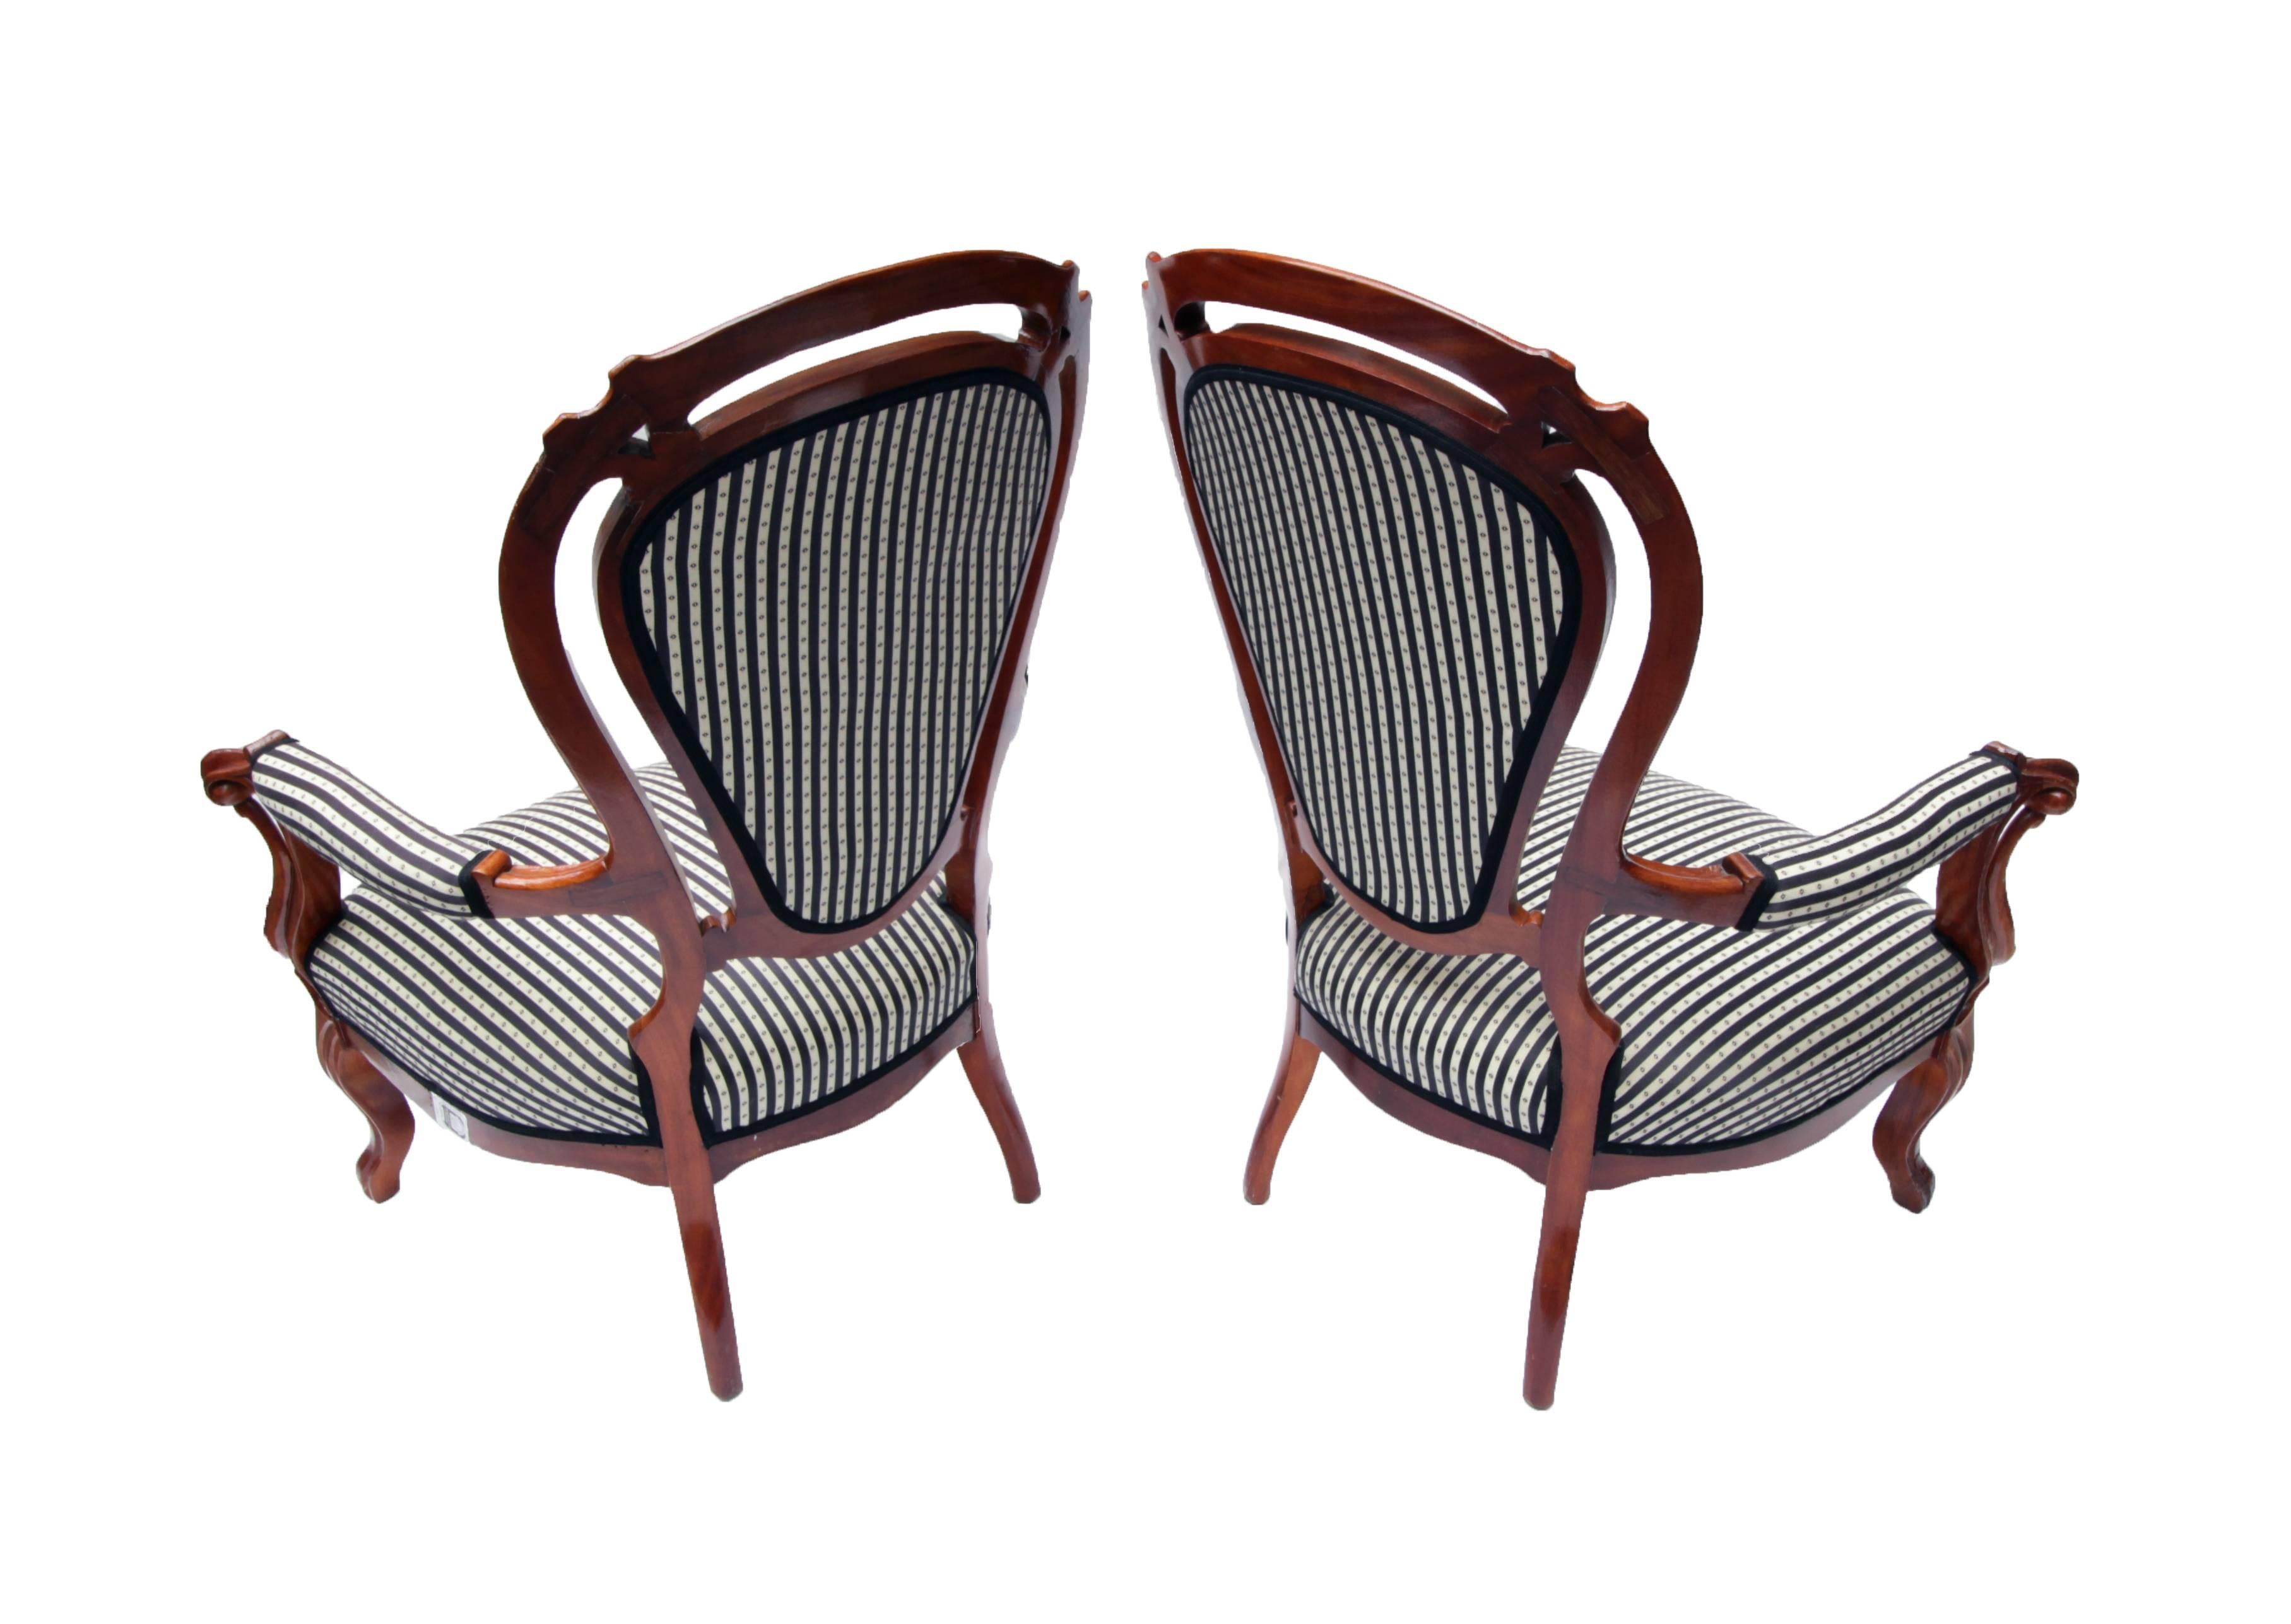 Die beiden Sessel sind in einem sehr guten Zustand und neu gepolstert. Die Stühle sind aus massivem Nussbaumholz gefertigt und stammen aus der Zeit von Louis Philippe.